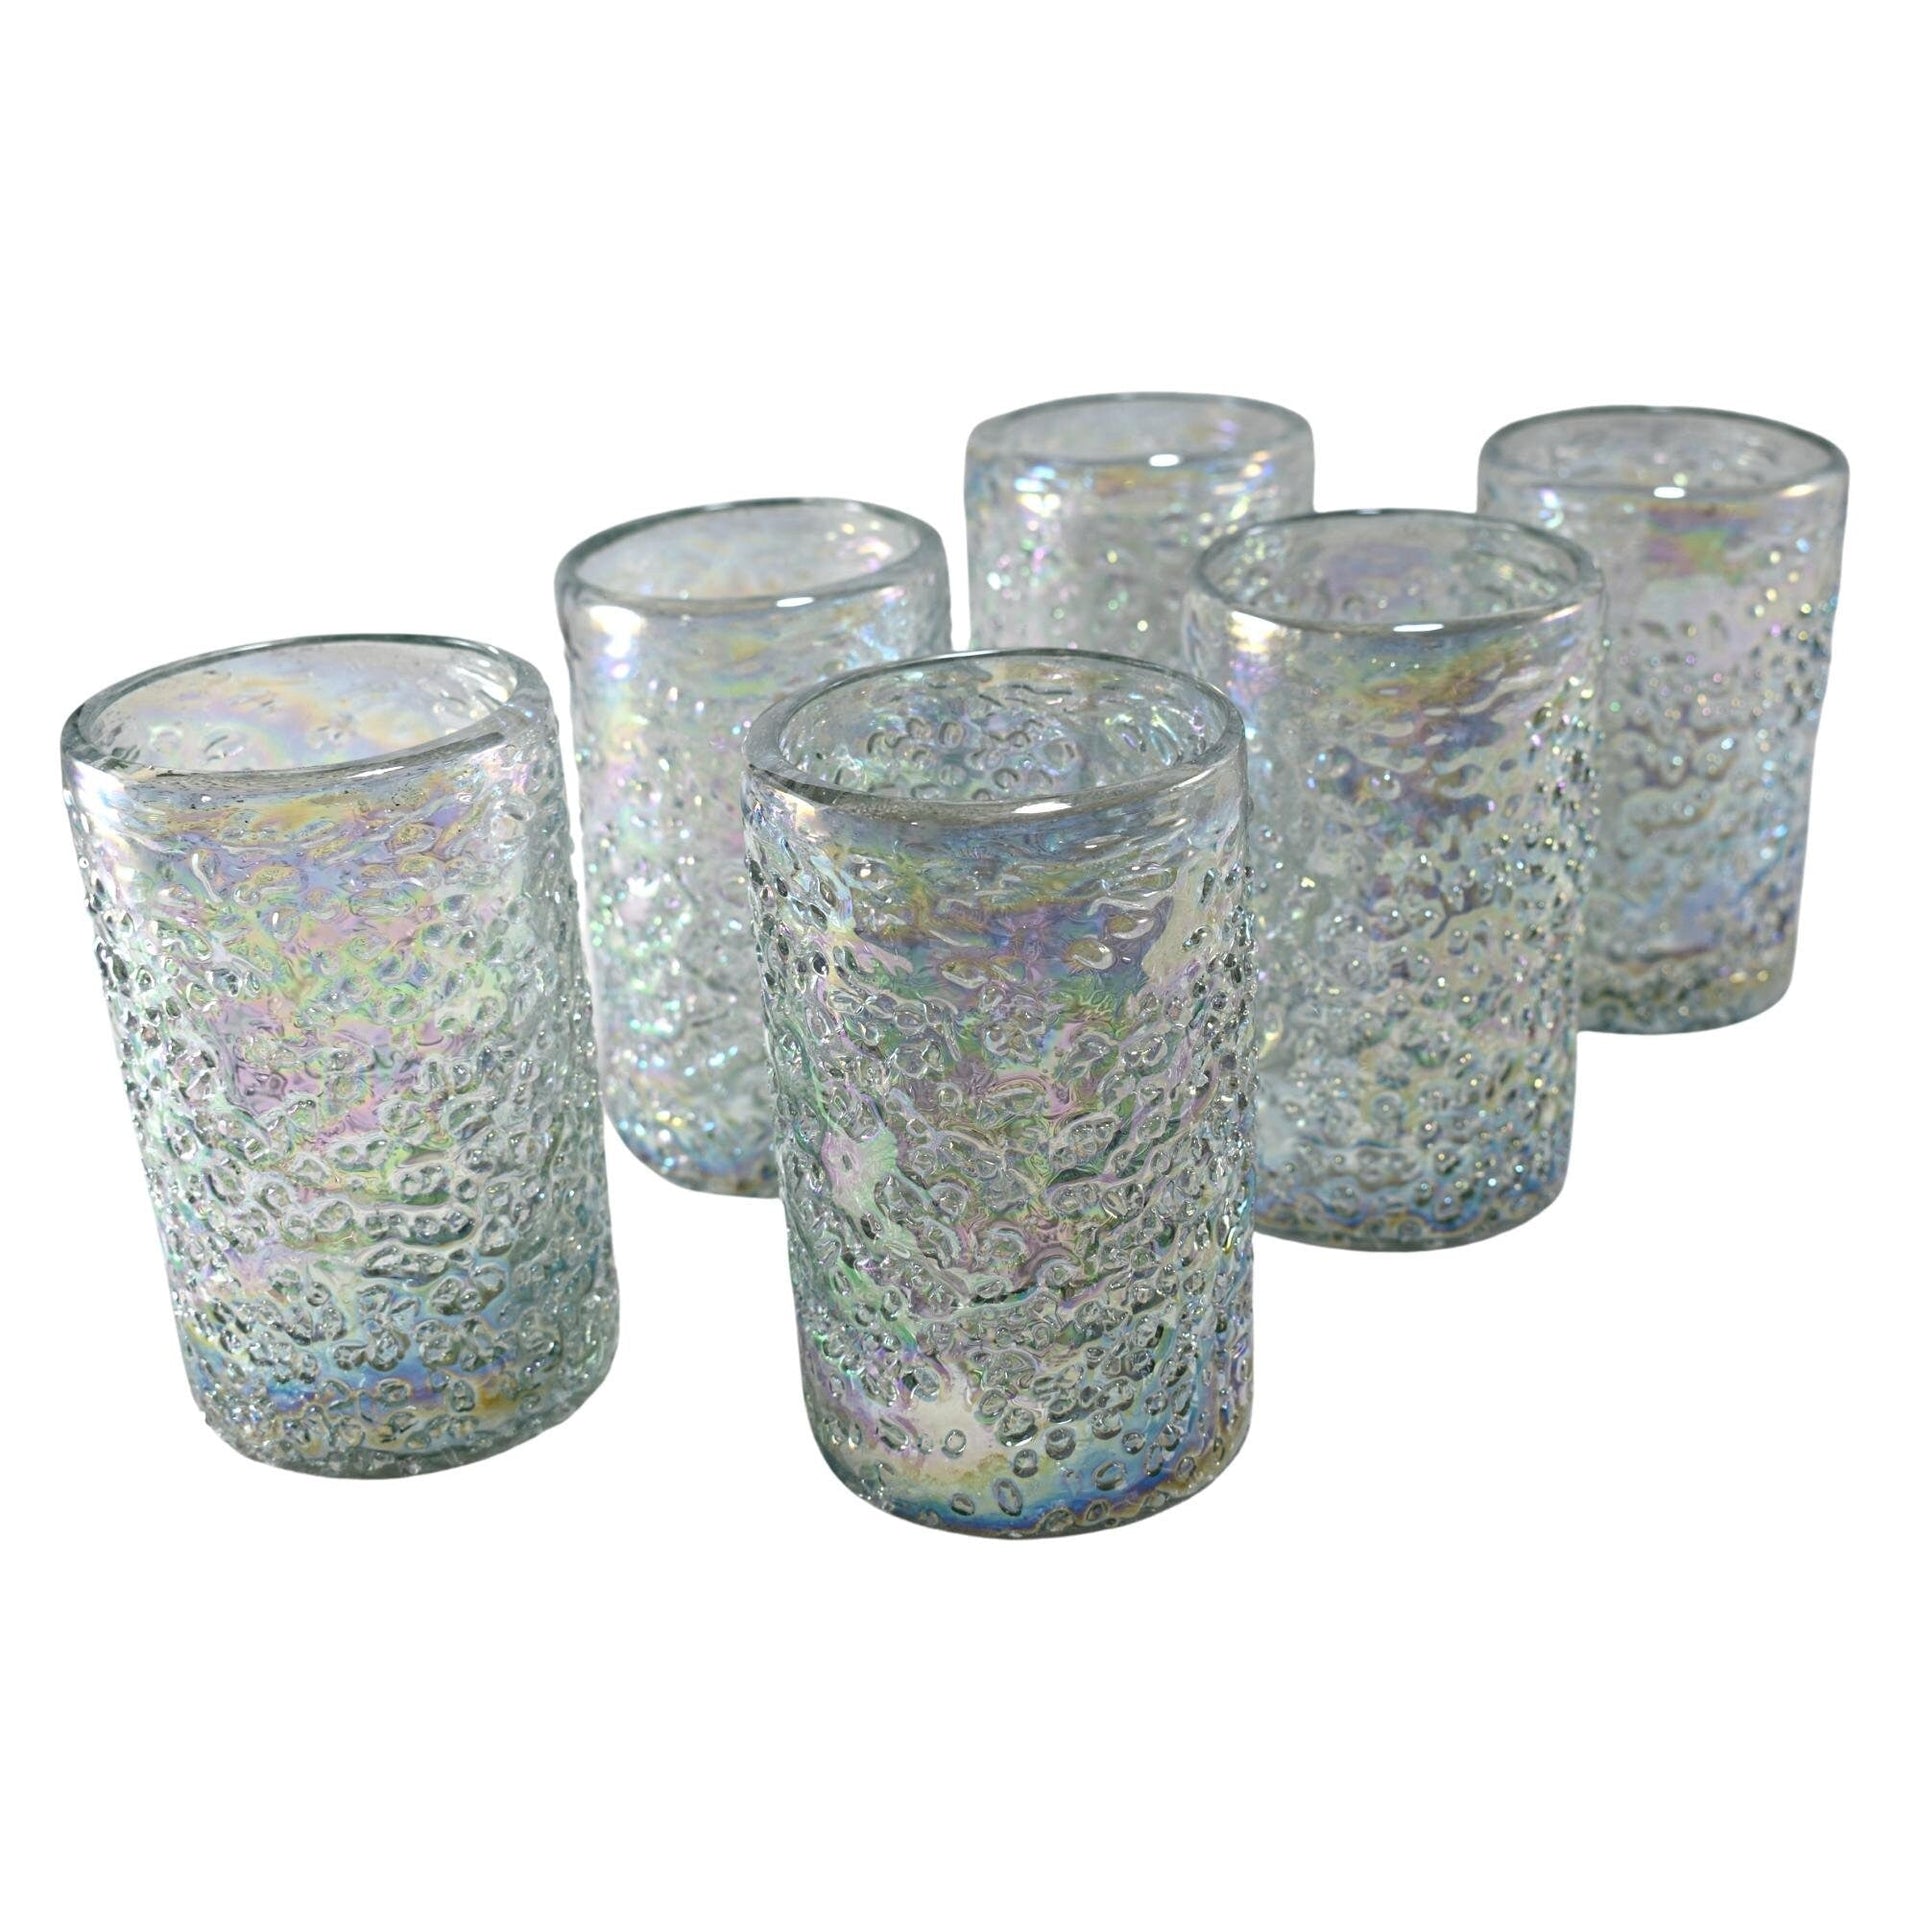 https://www.marey.com.mx/cdn/shop/products/vasos-vidrio-soplado-para-agua-set-de-6-piezas-hechos-artesanalmente-en-mexico-vidrio-reciclado-artesanal-granizo-pearly-16-oz-mareyhomegoods-222843.jpg?v=1692962691&width=1920